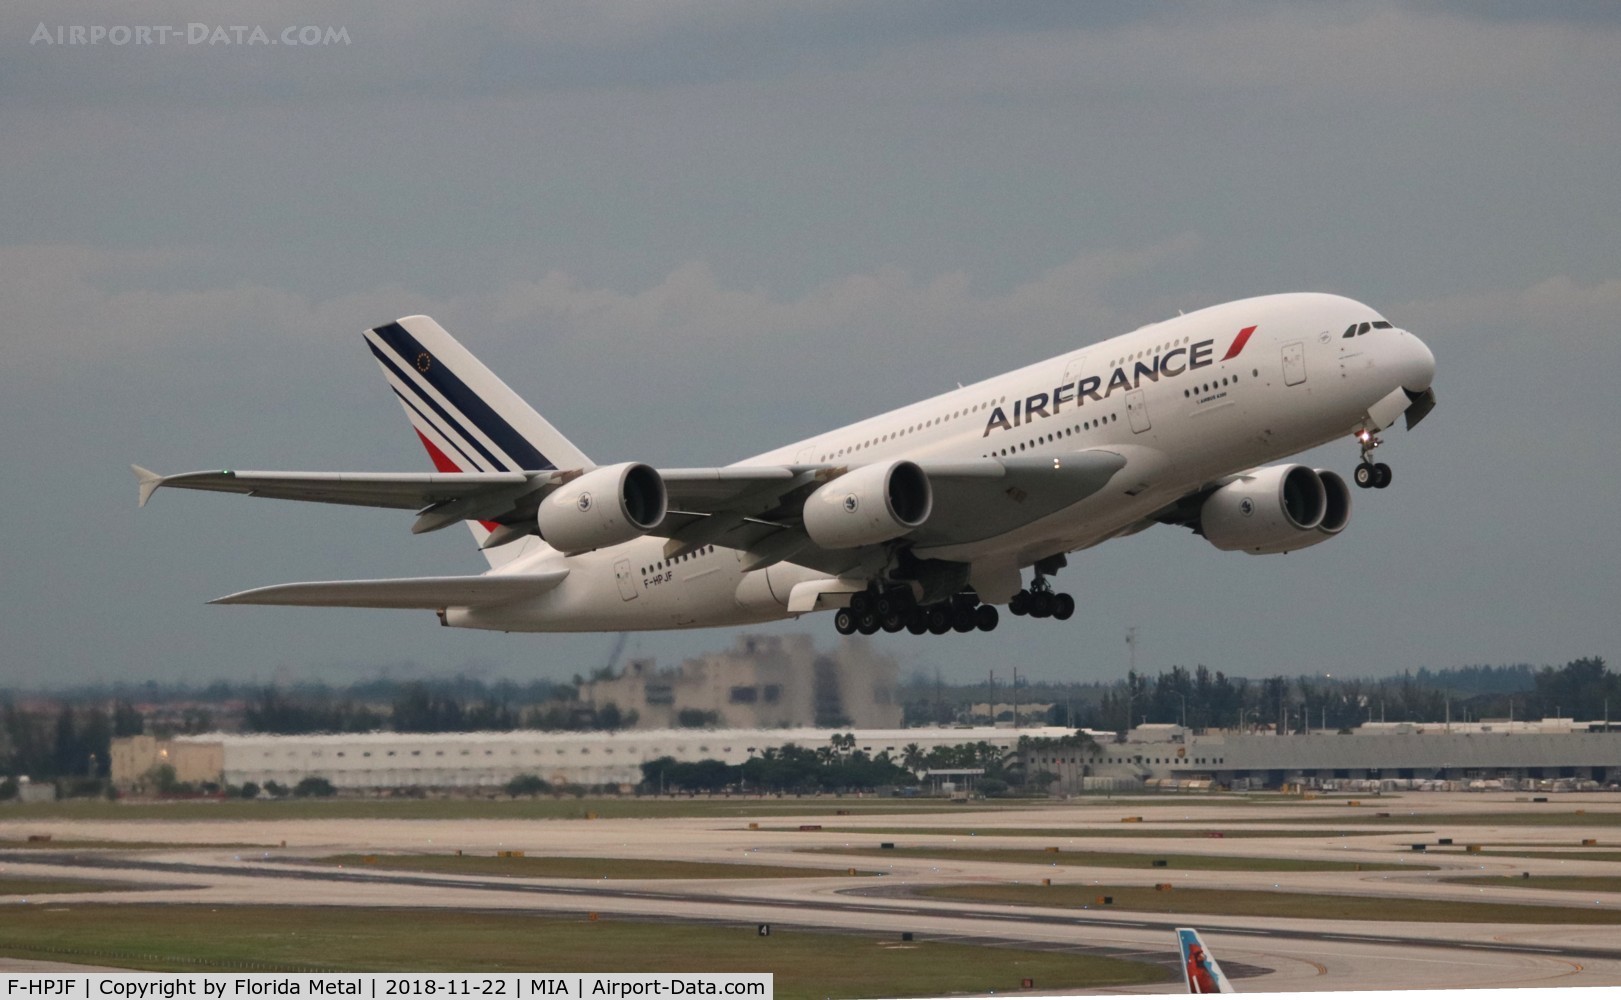 F-HPJF, 2010 Airbus A380-861 C/N 064, Air France